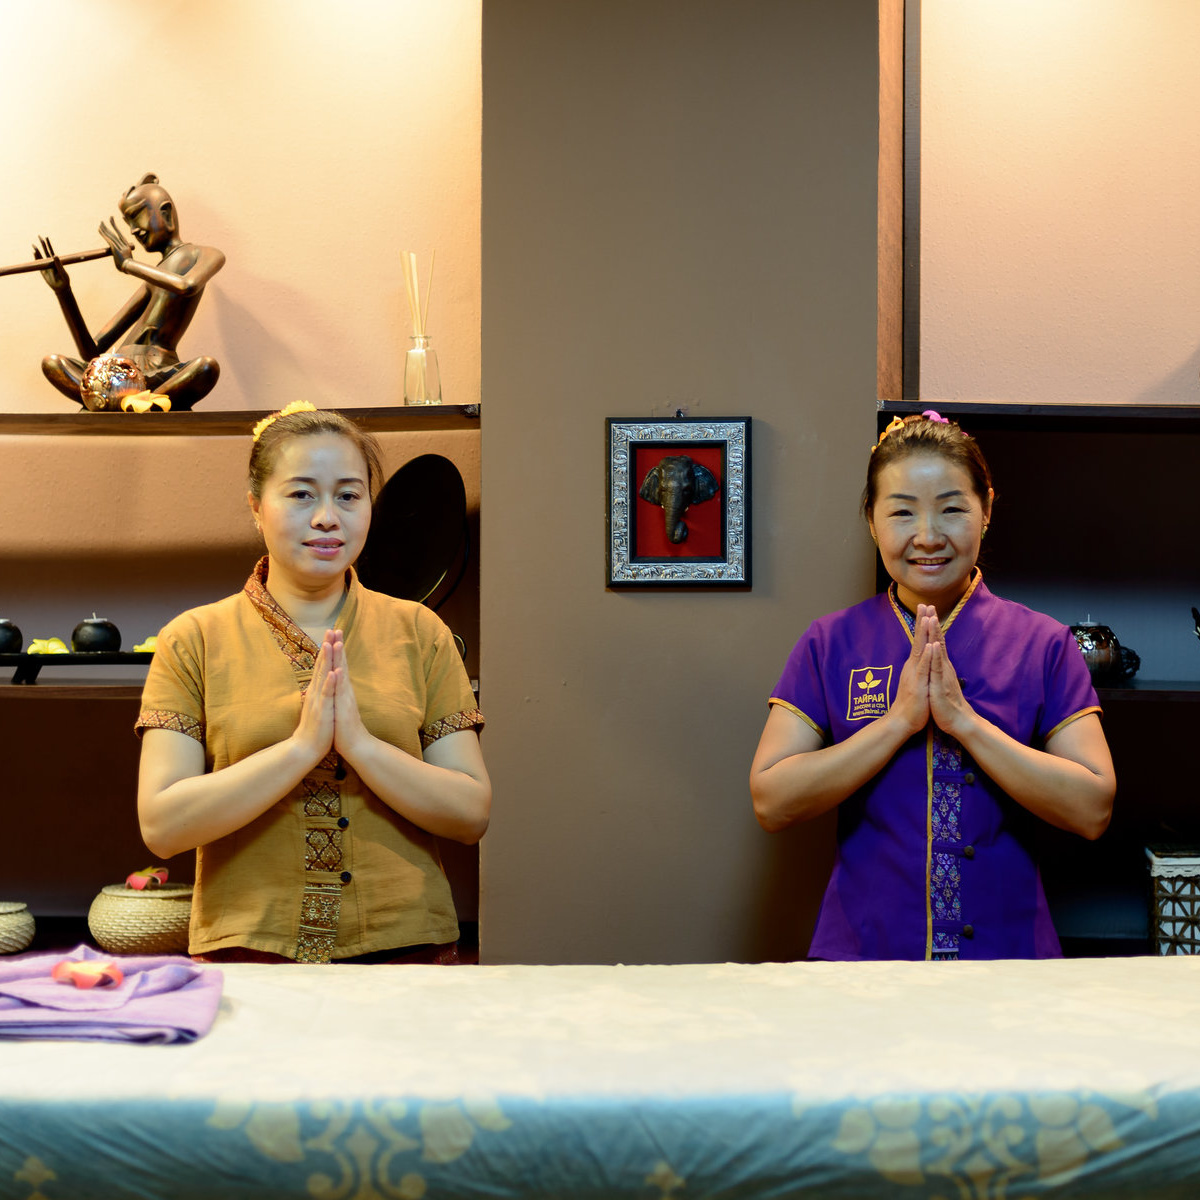 ТАЙРАЙ салон тайского массажа и спа